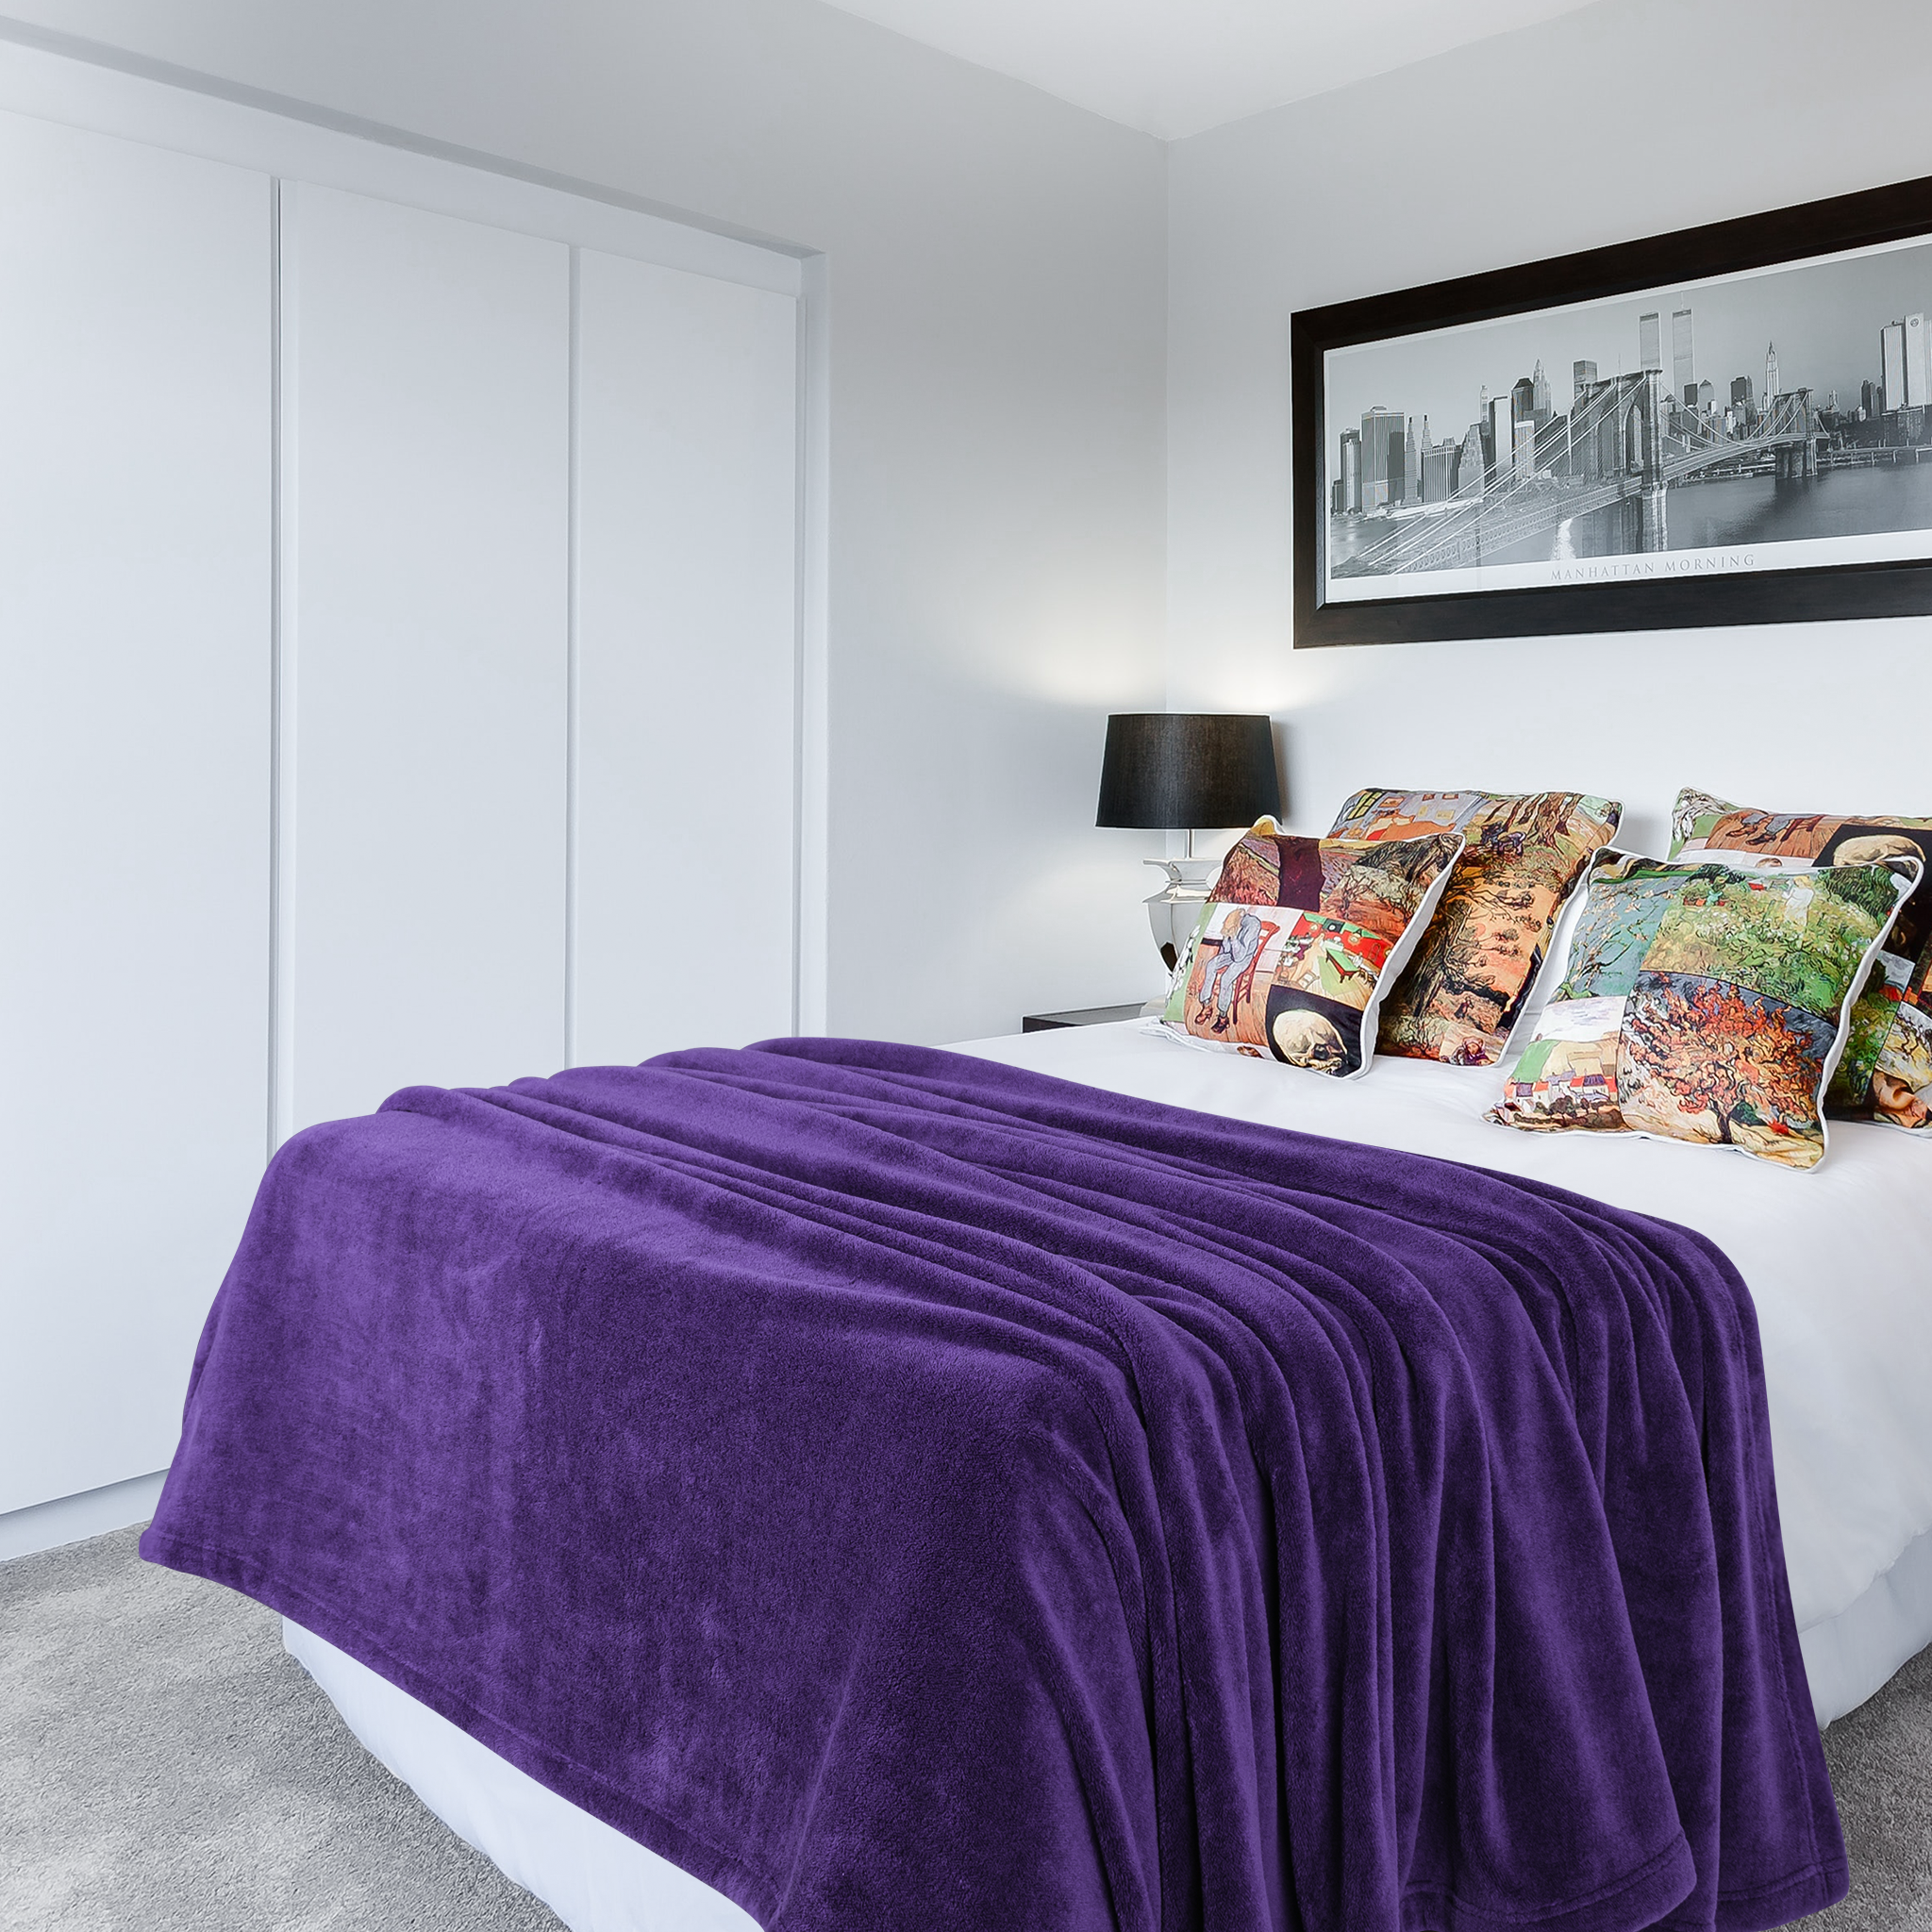 American Soft Linen - Bedding Fleece Blanket - Queen Size 85x90 inches - Purple - 1